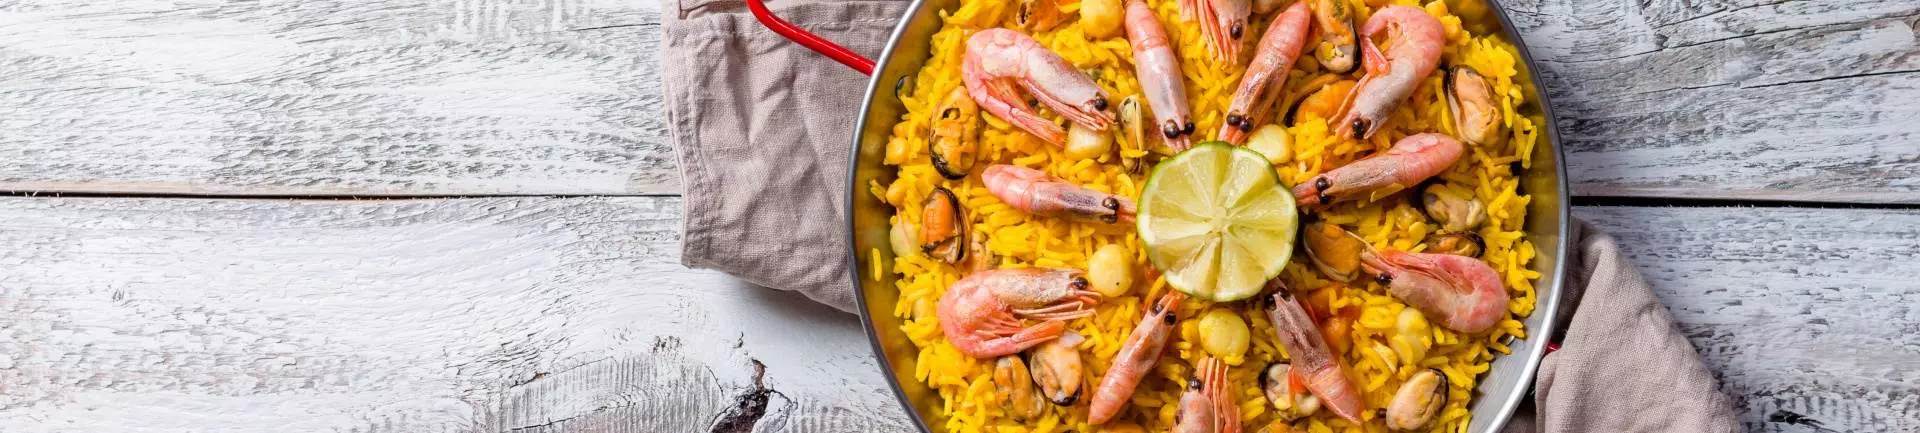 Comidas típicas espanholas: conheça os principais pratos